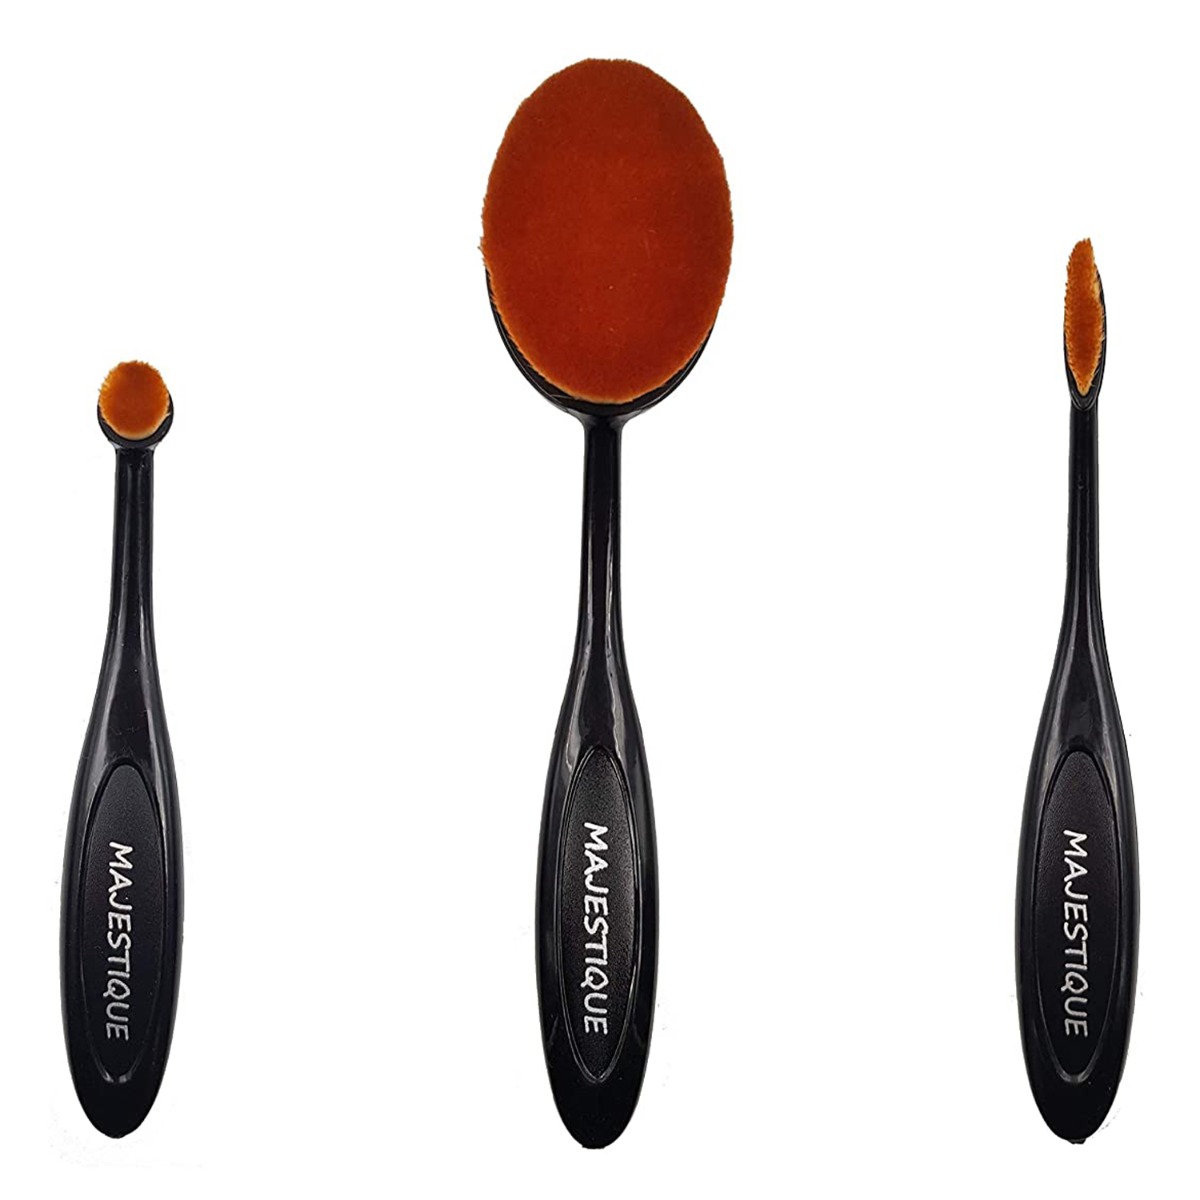 Majestique Supple Oval Makeup brush set value, Pack Of 3